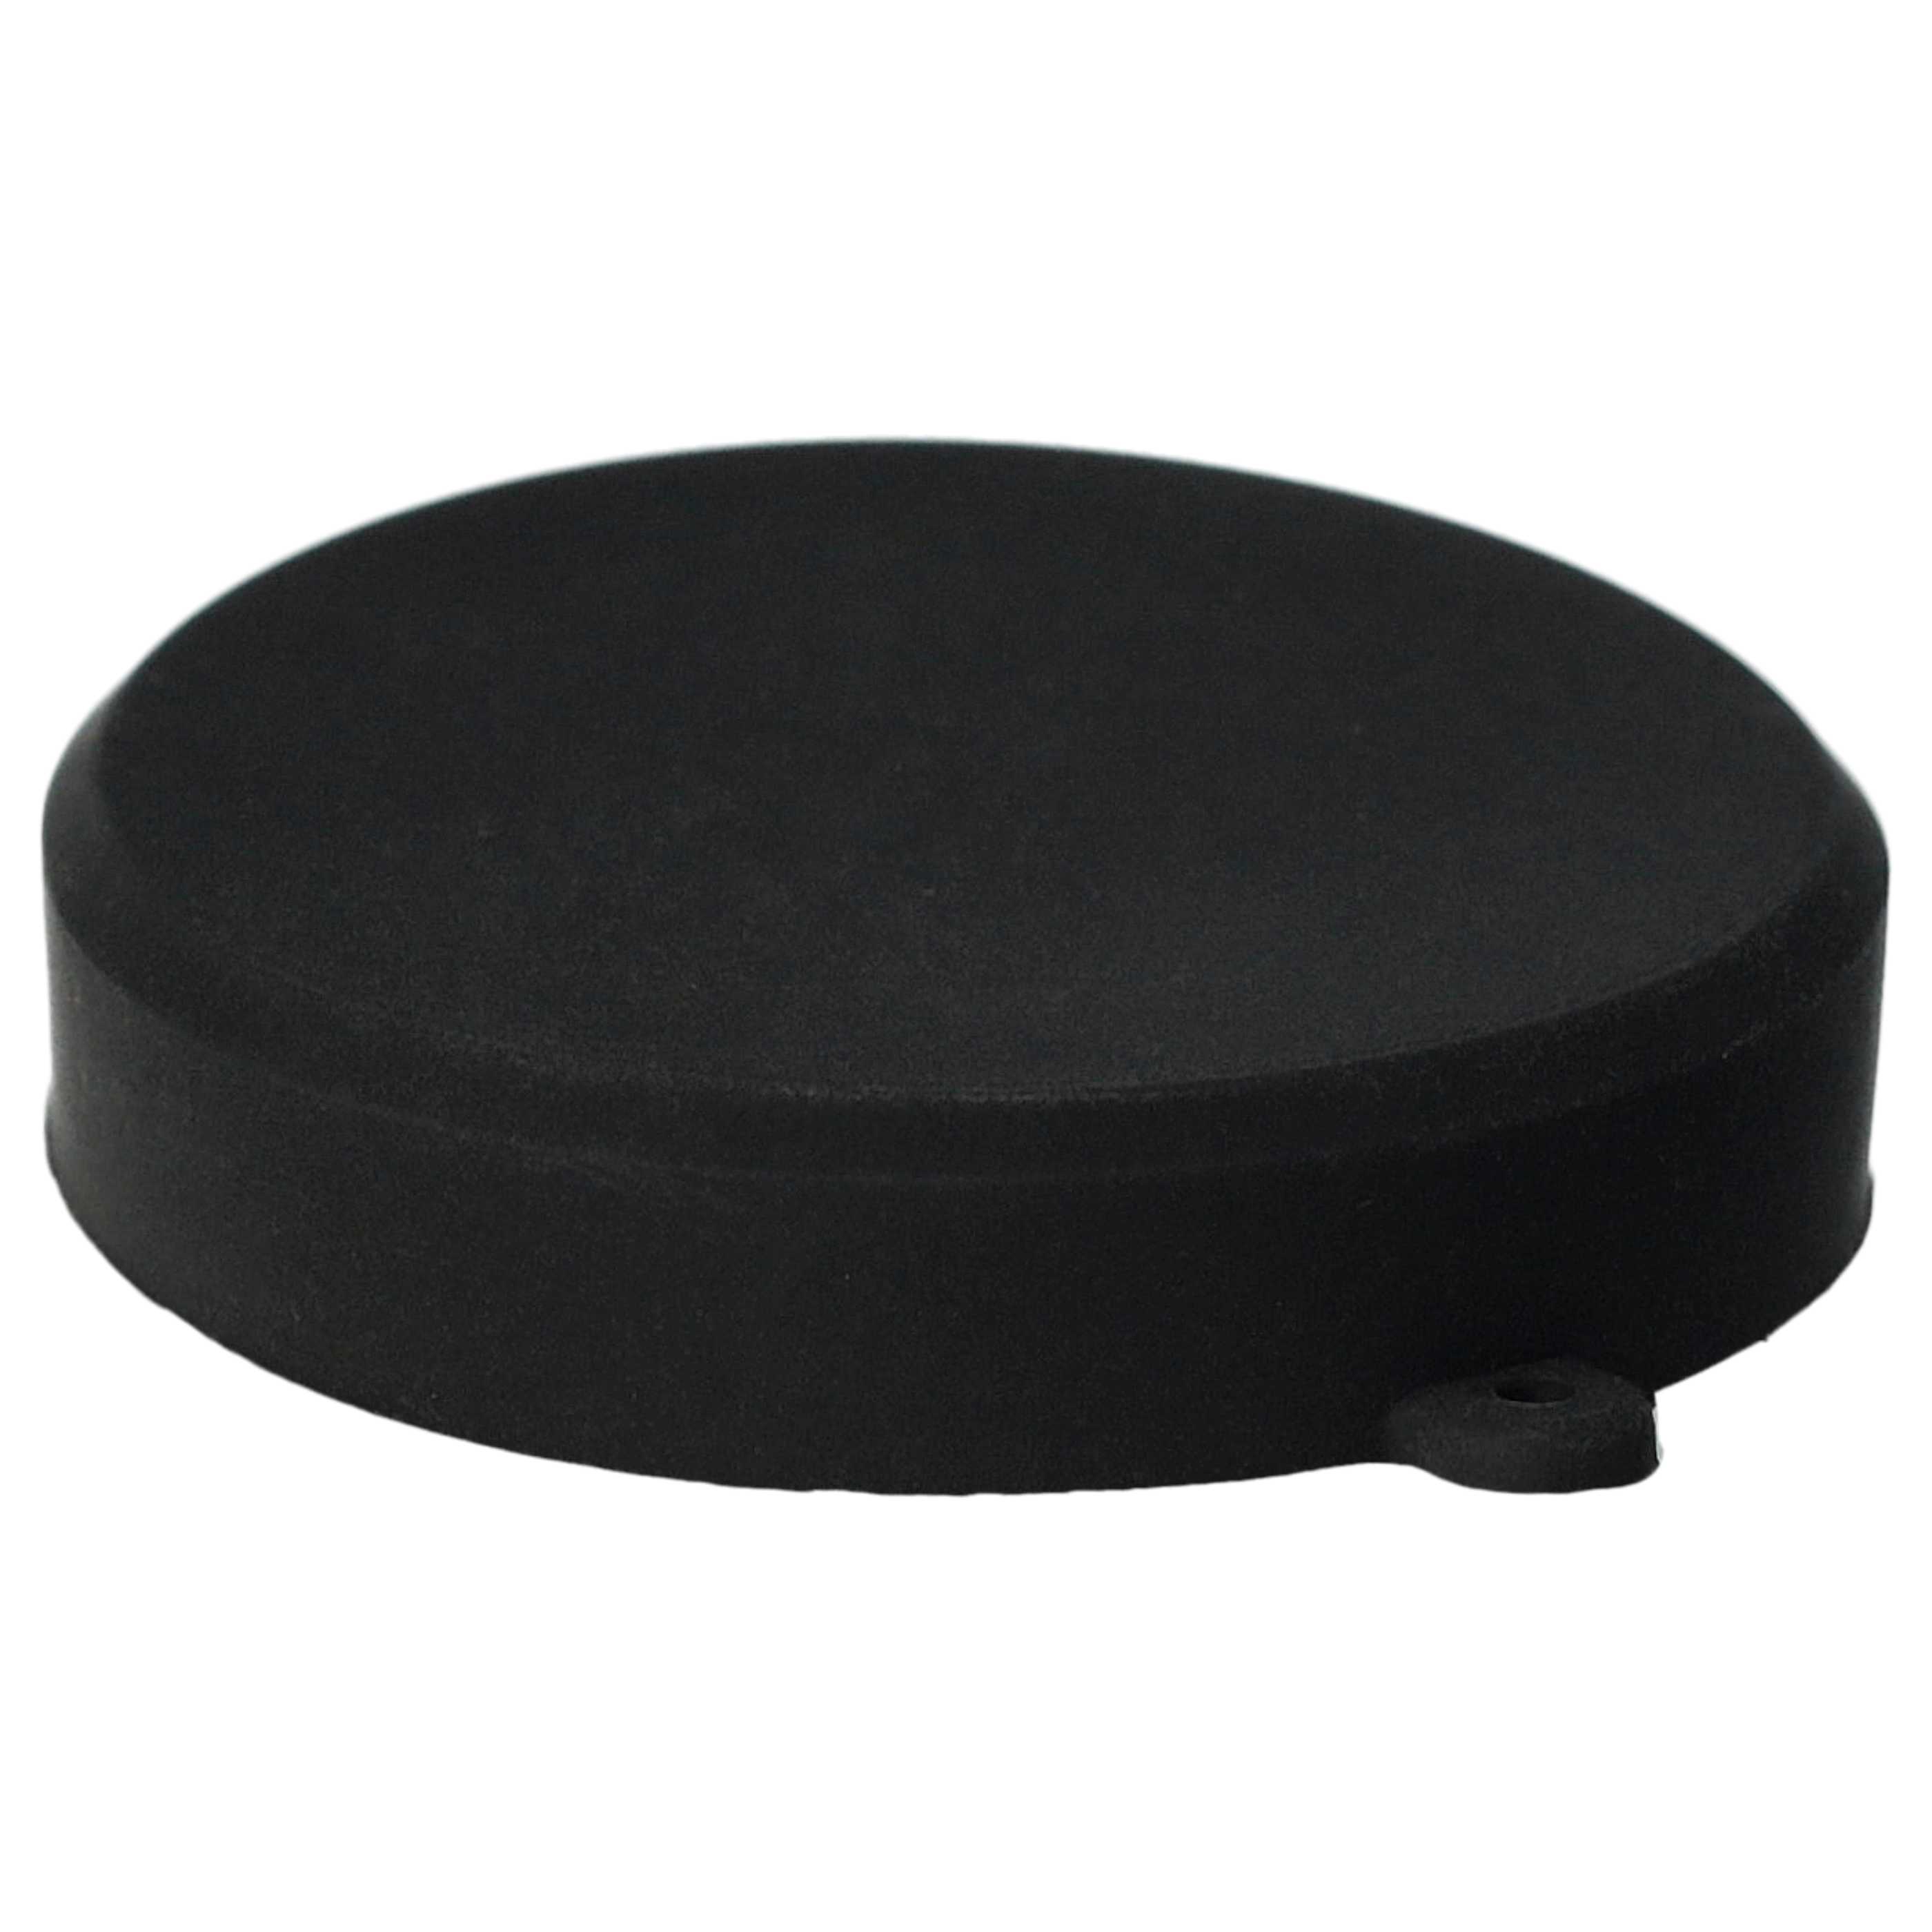 Lens Cap - Plastic, Black